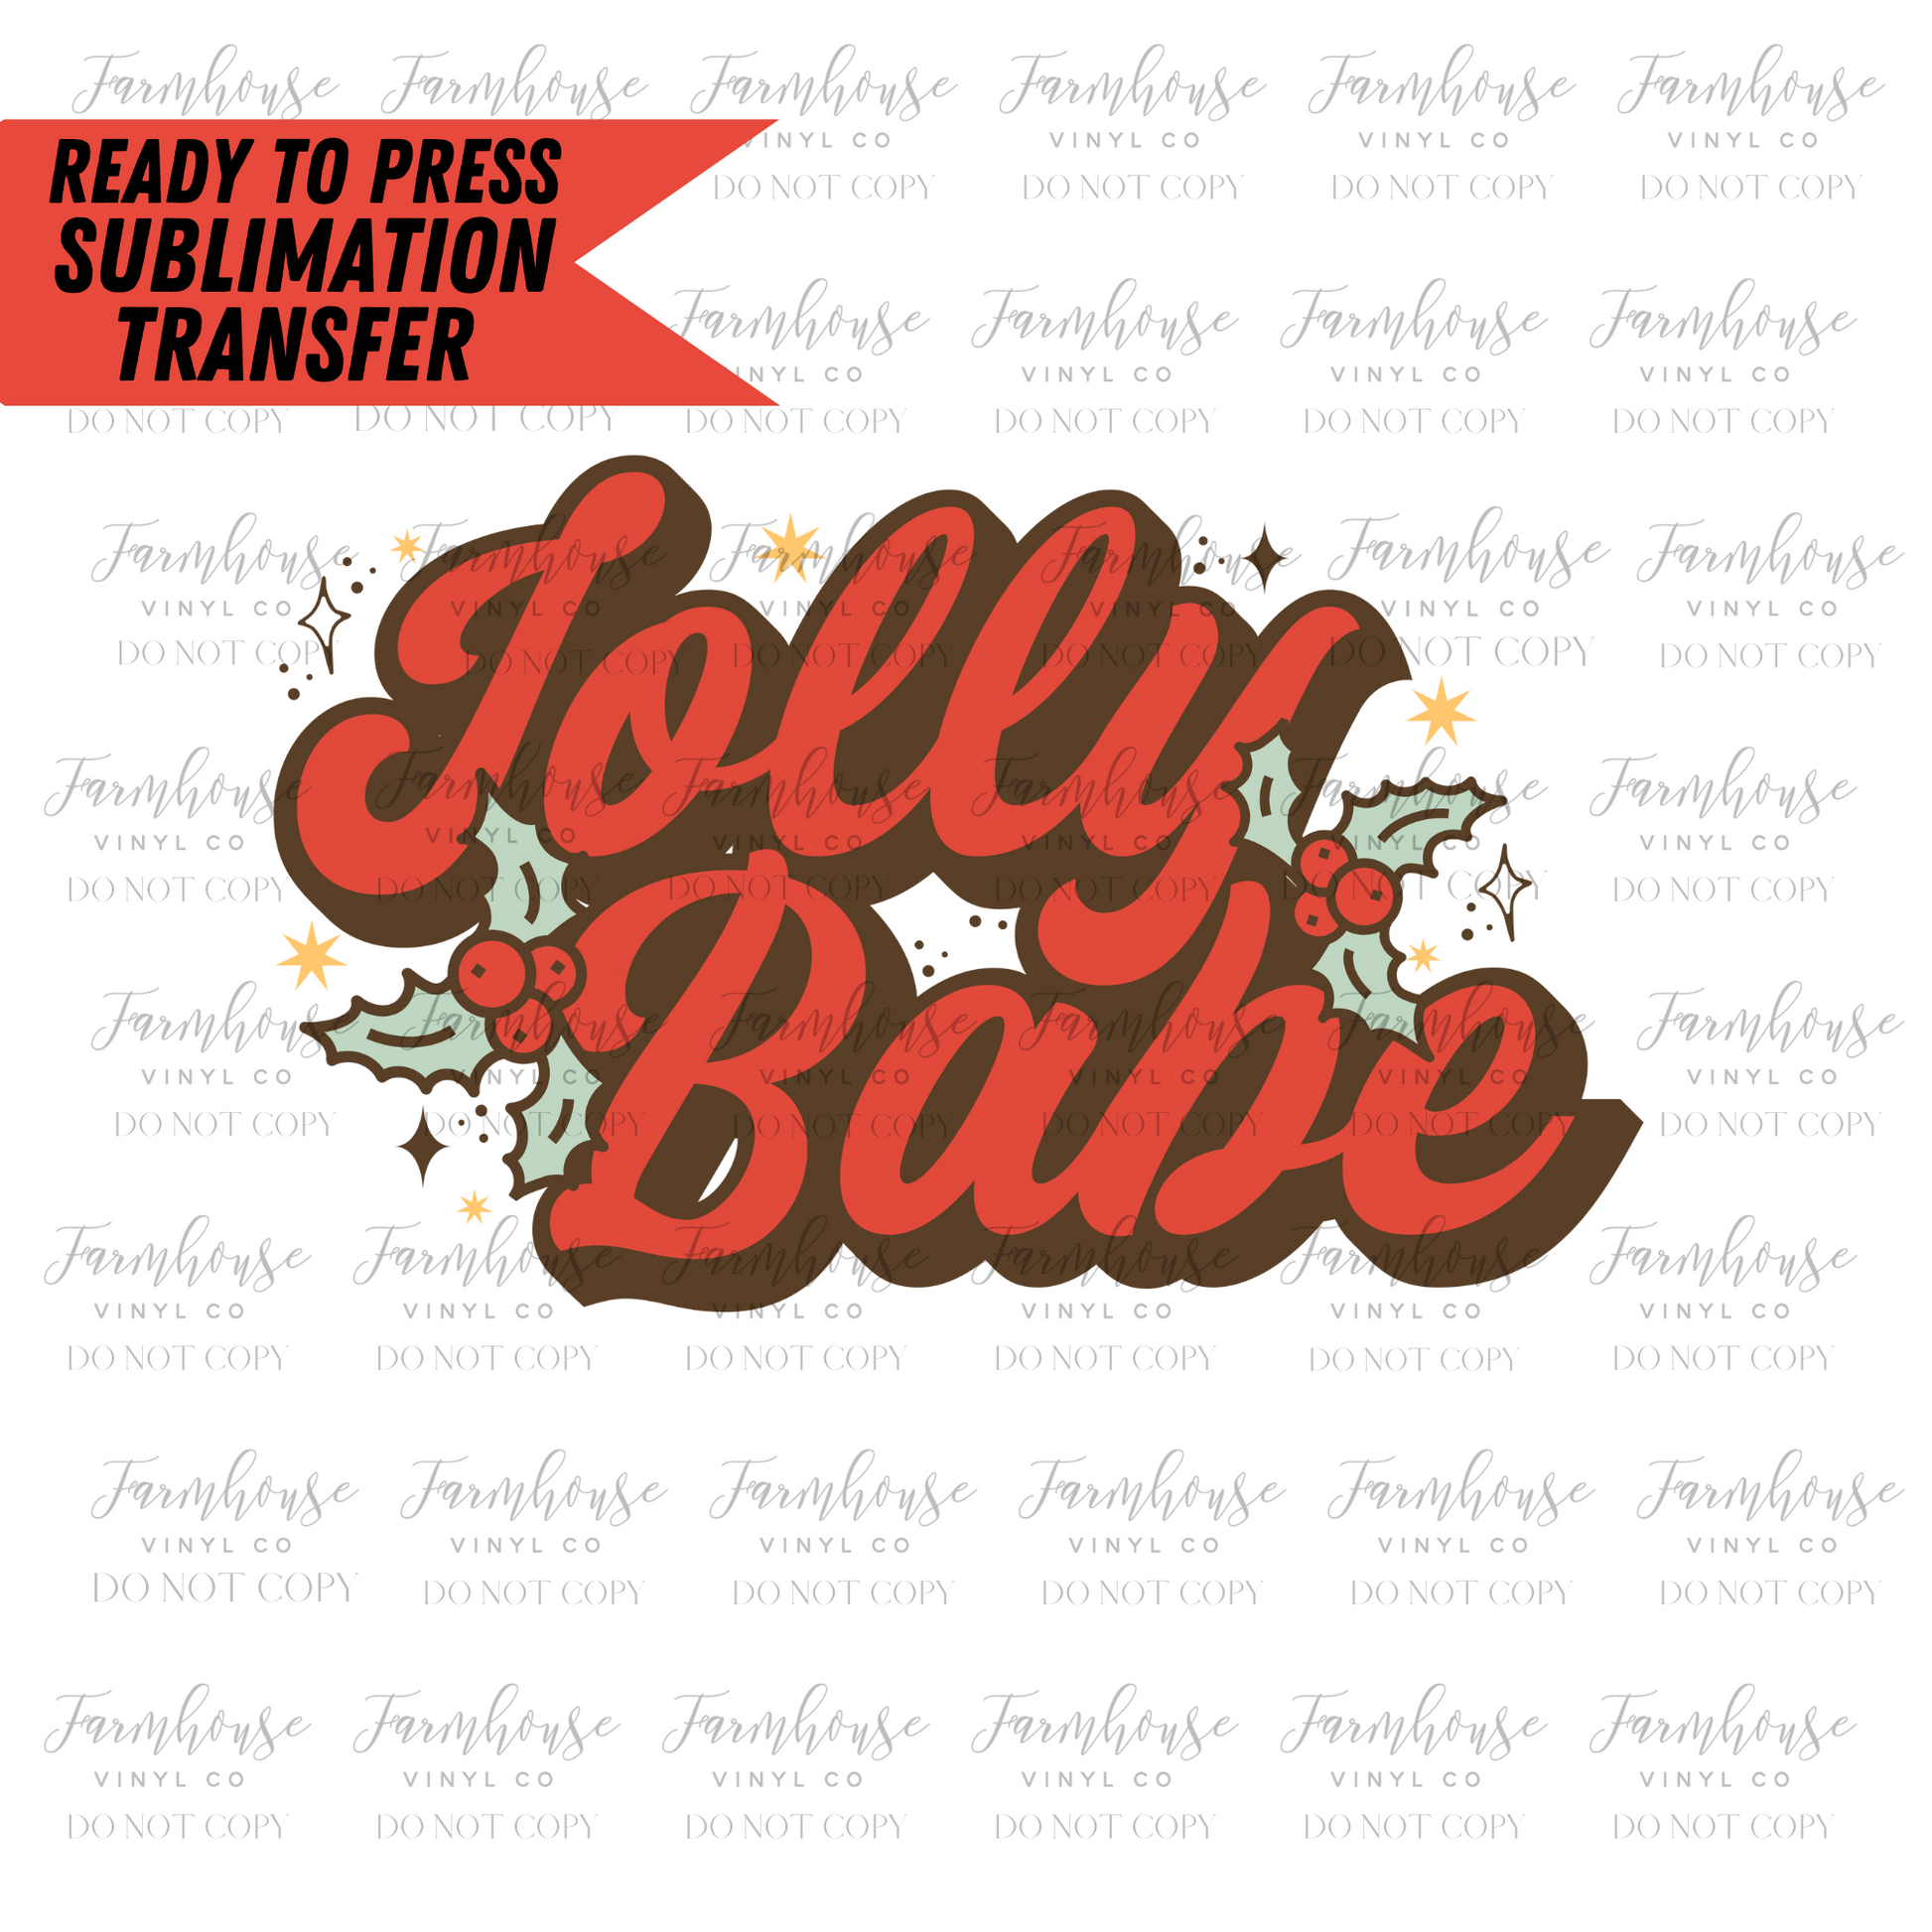 Jolly Babe Ready to Press Sublimation Transfer - Farmhouse Vinyl Co